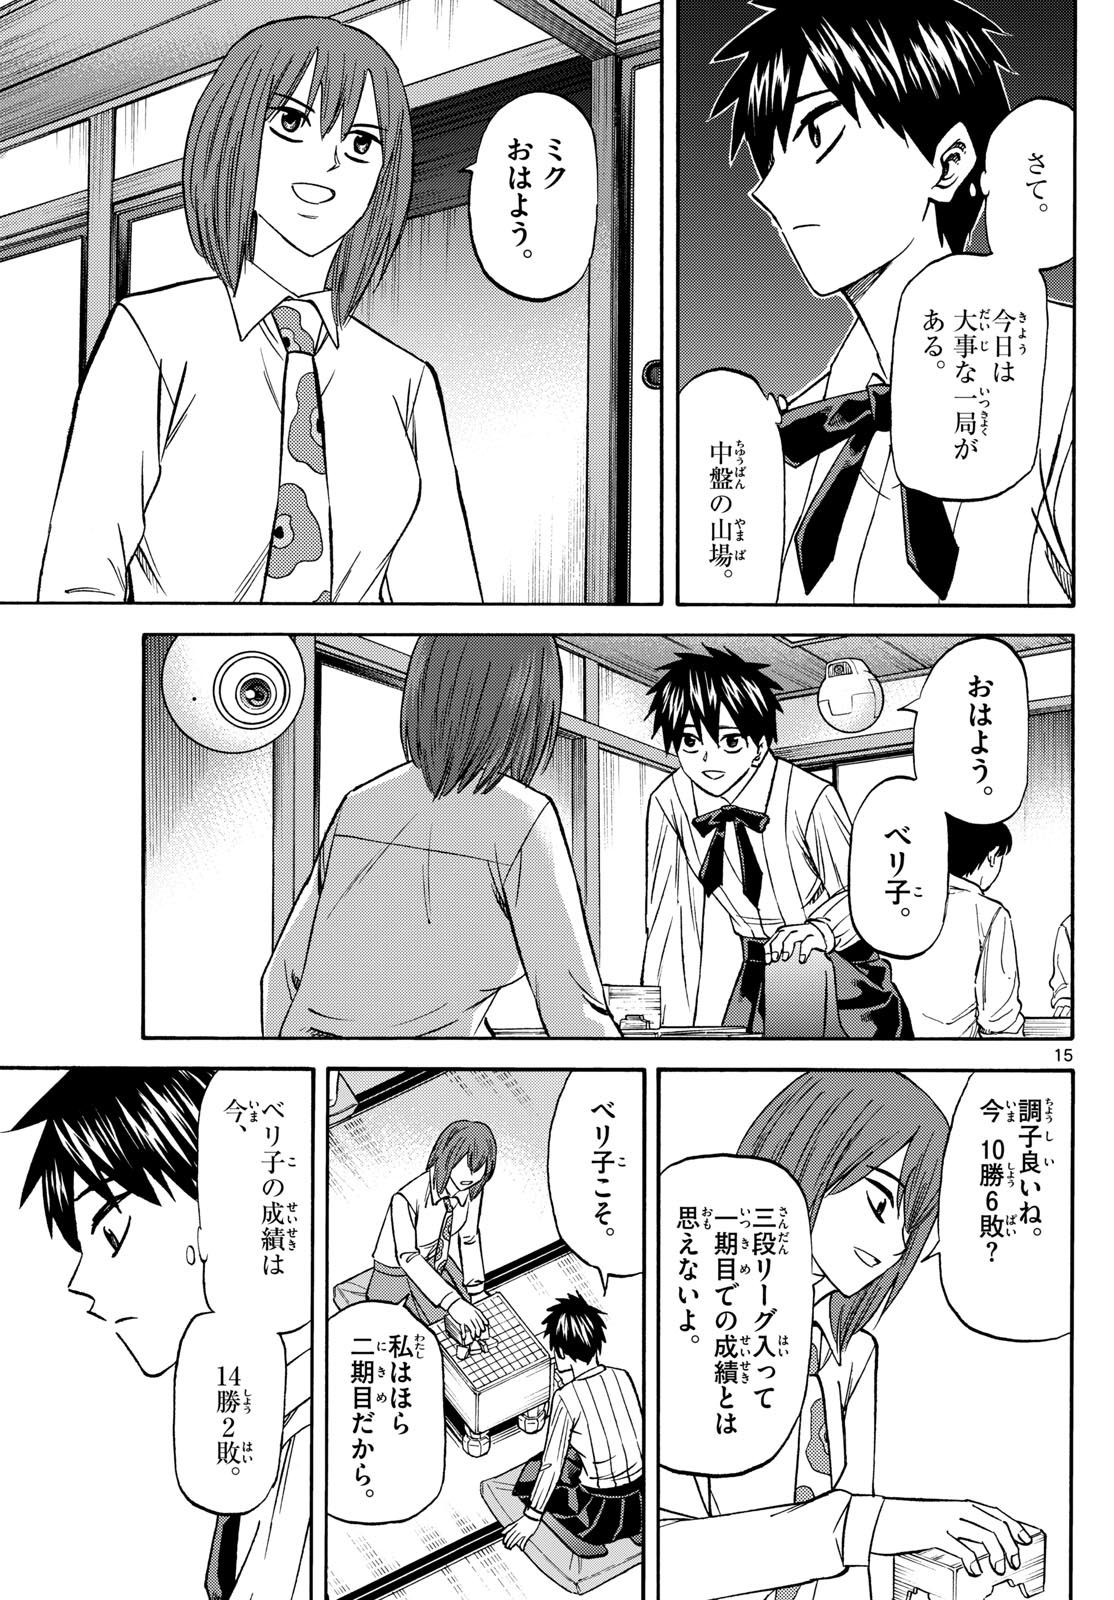 Tatsu to Ichigo - Chapter 188 - Page 15